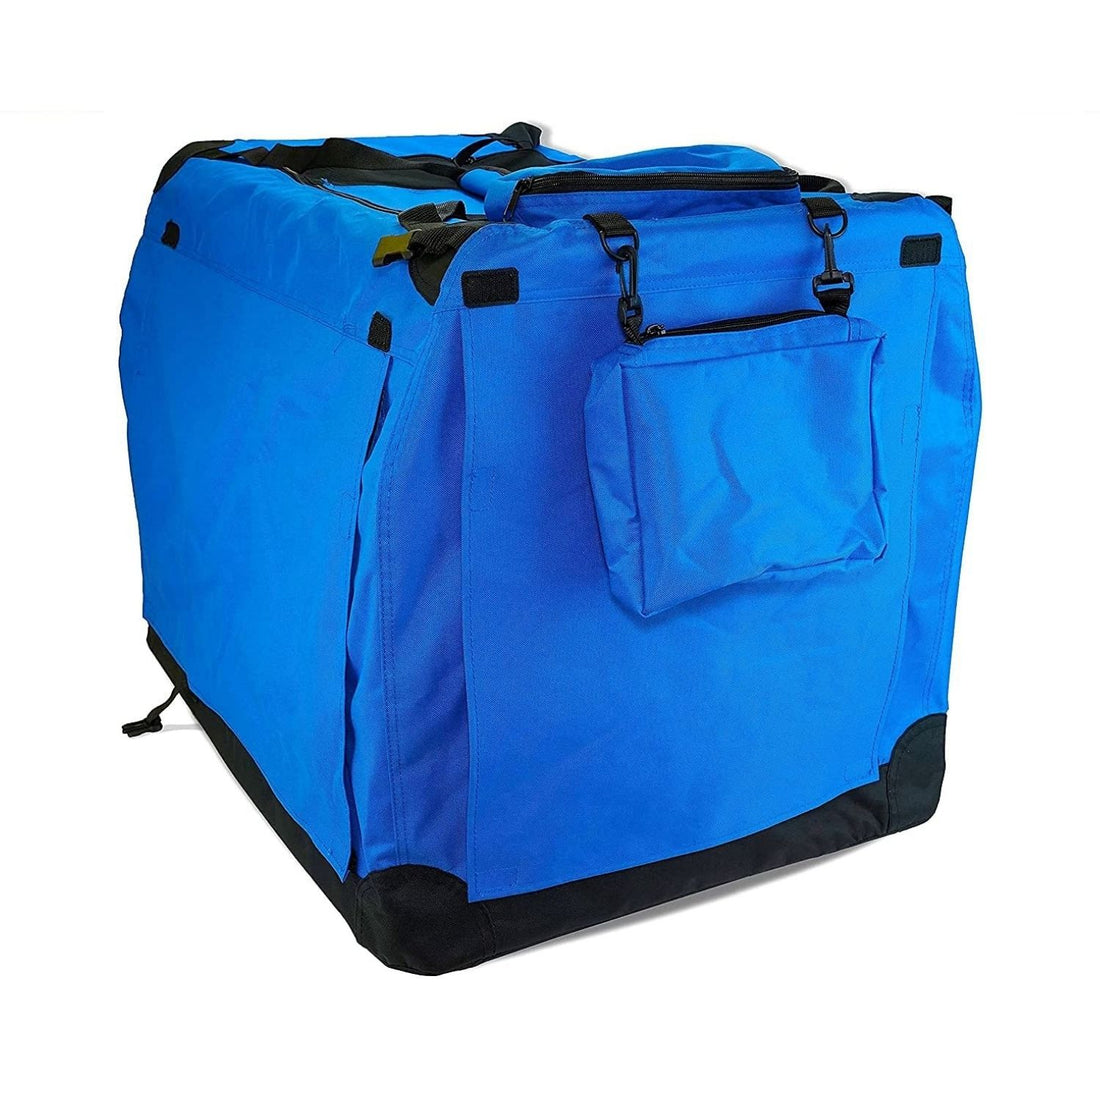 FLOOFI Portable Pet Carrier-Model 1-M Size (Blue) FI-PC-144-KPT-Pet Carriers &amp; Travel Products-PEROZ Accessories